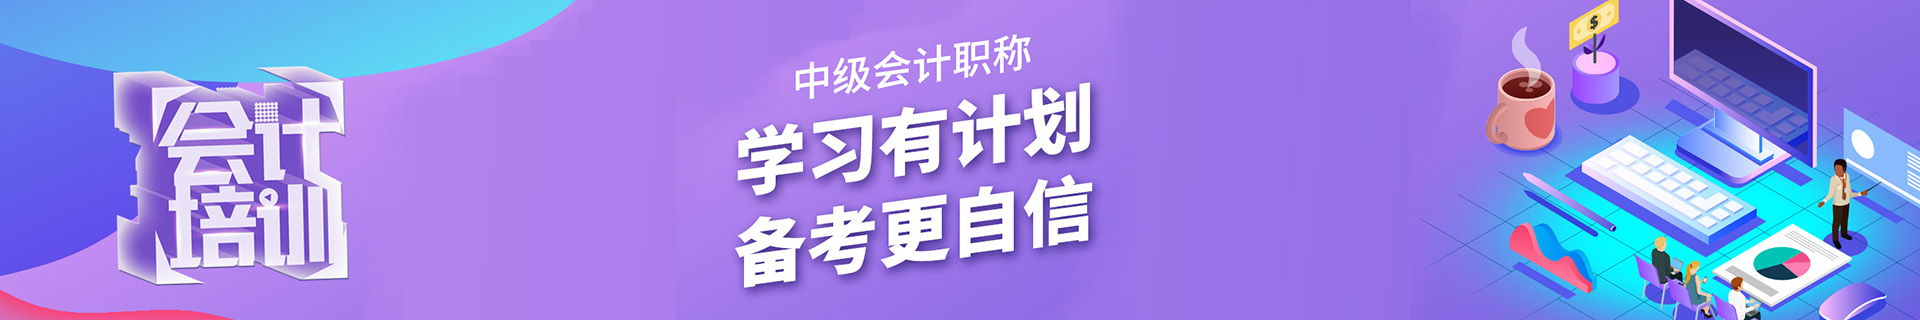 上海闵行颛桥仁和会计培训机构